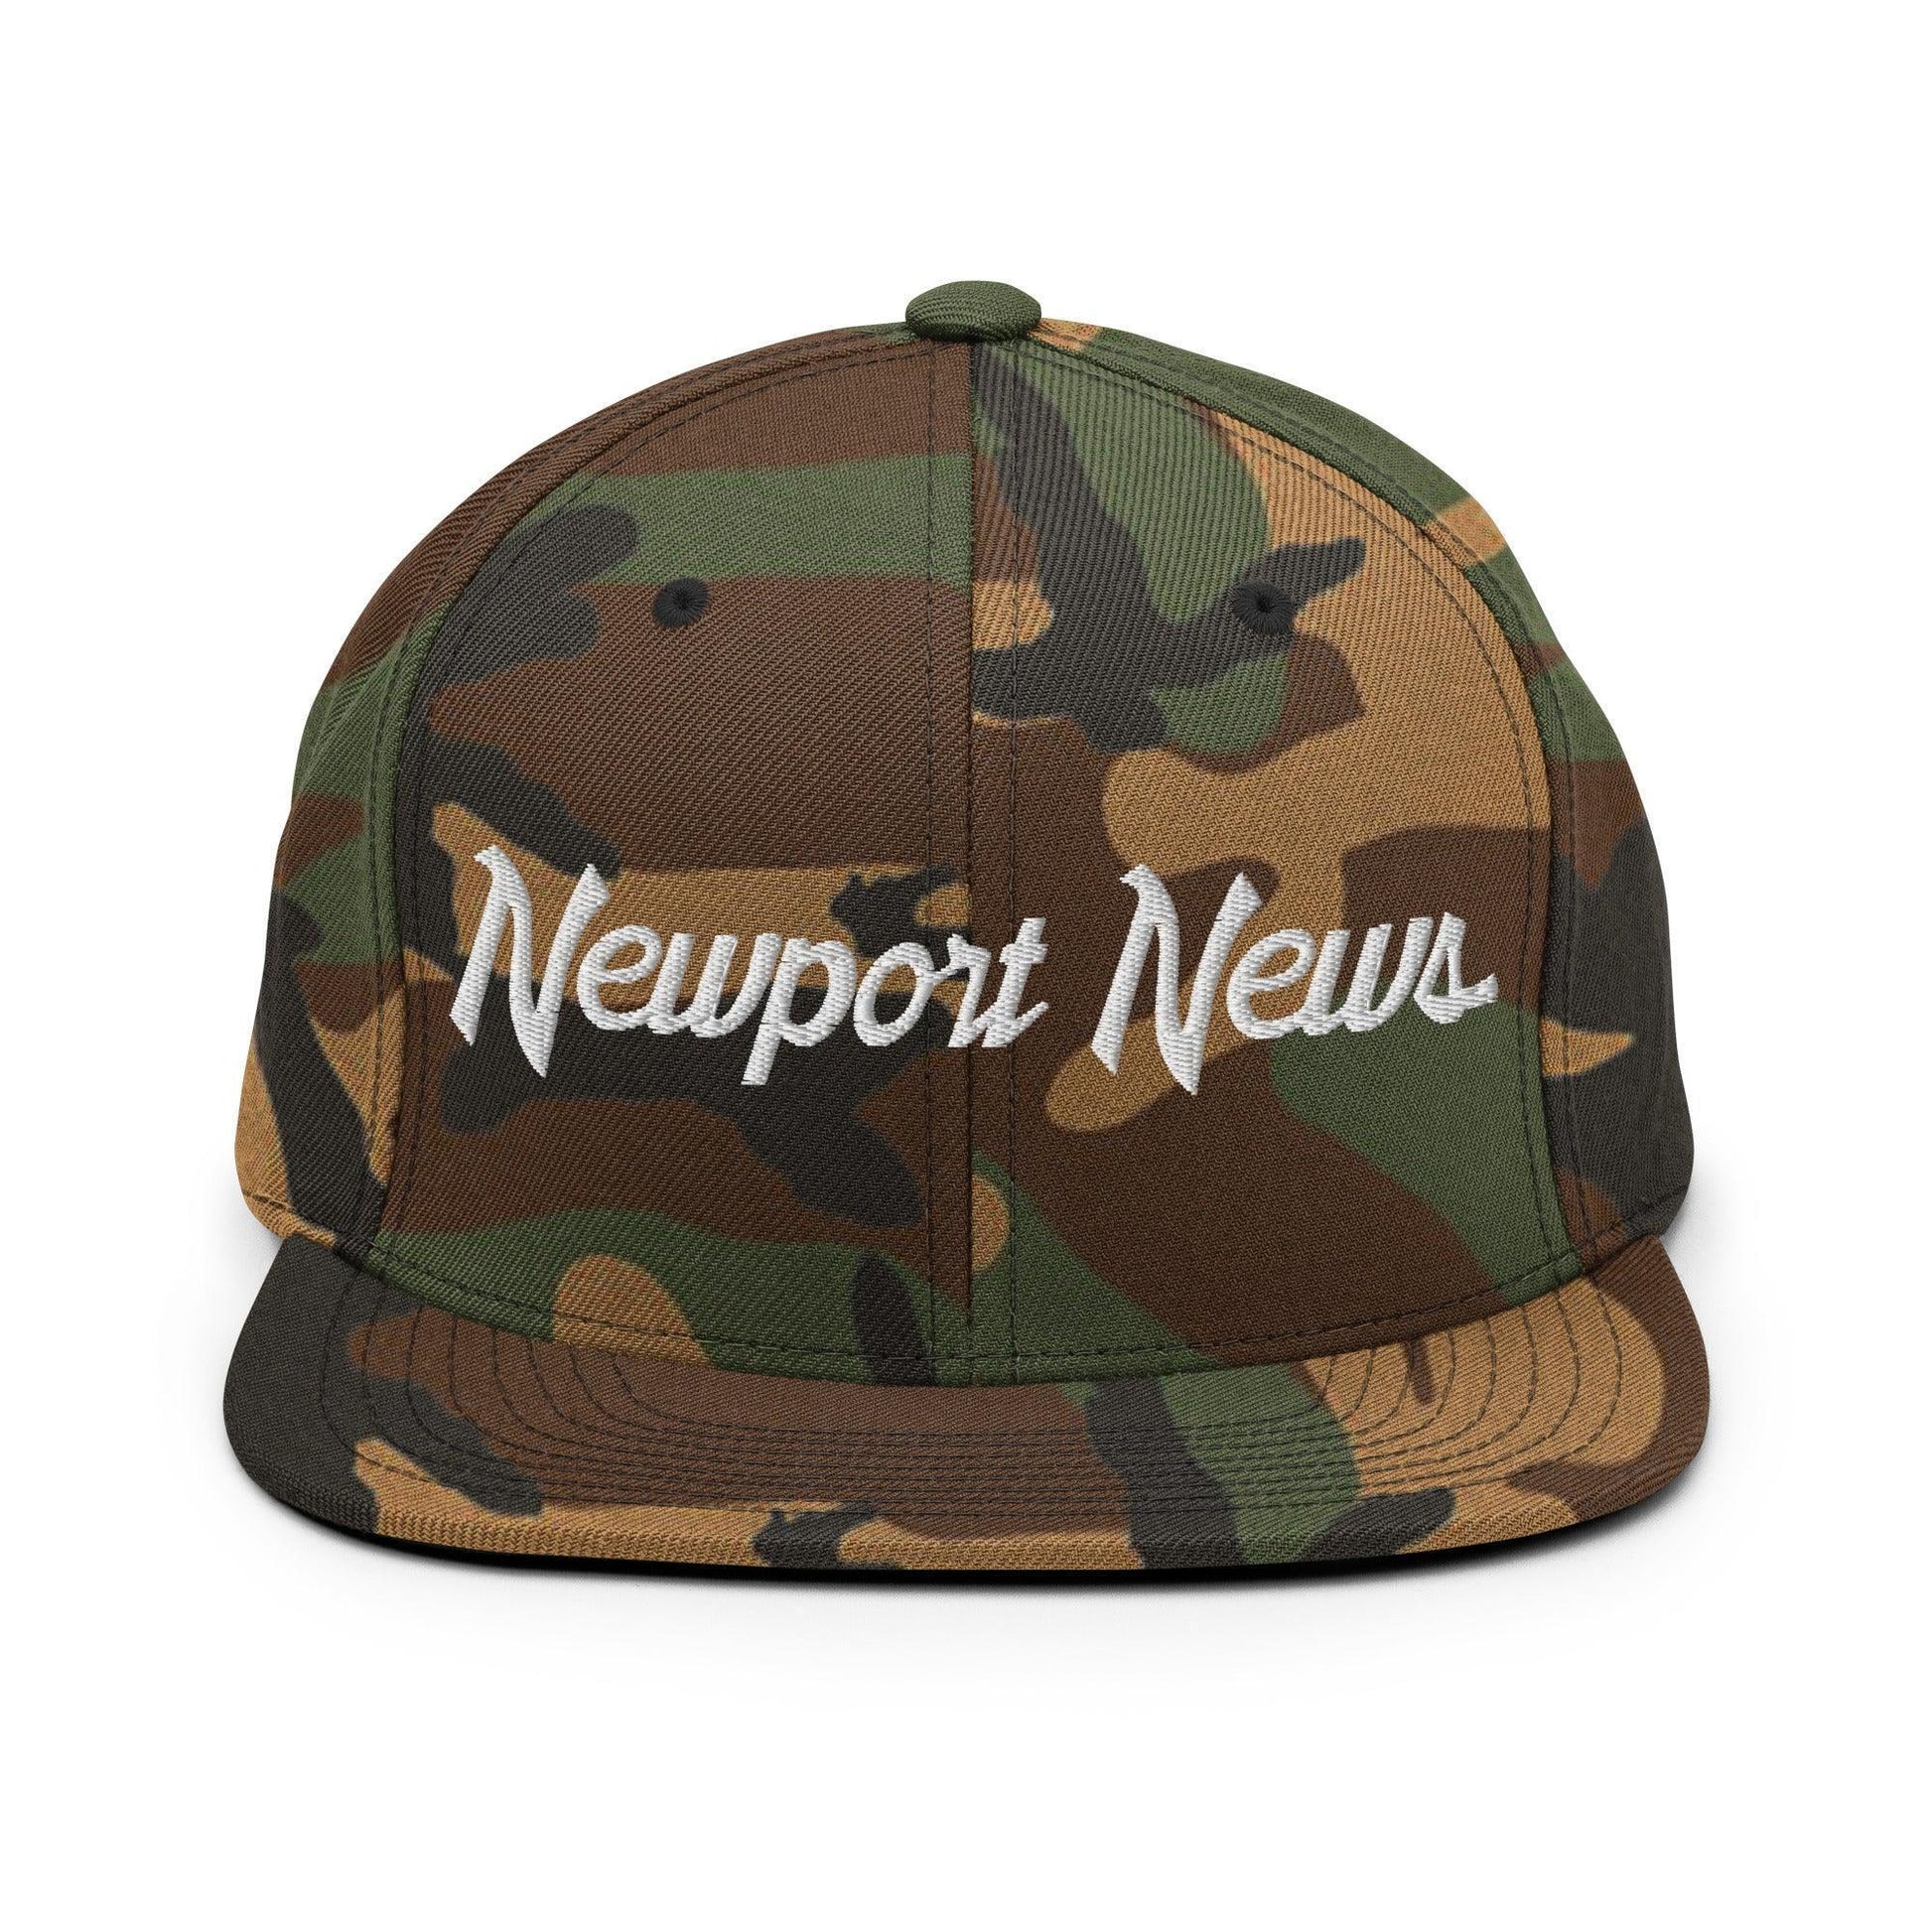 Newport News Script Snapback Hat Green Camo